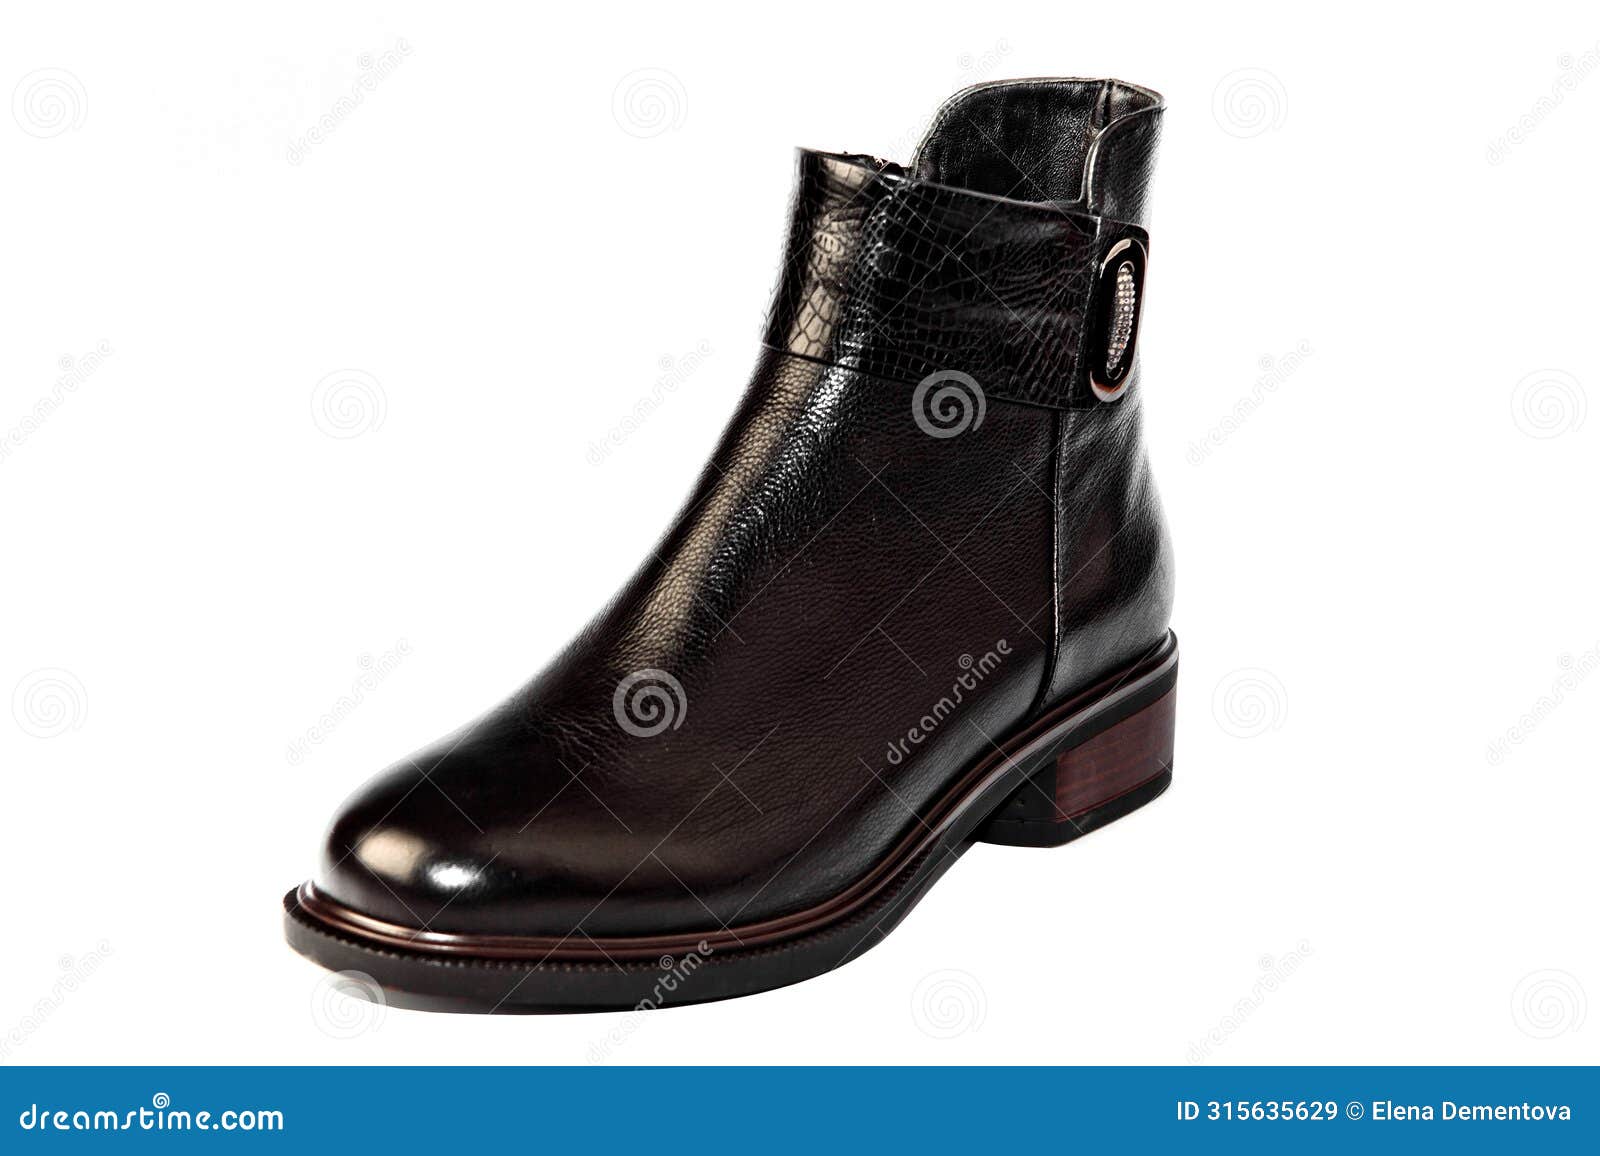 men's black shoes.demi - season shoes .classic black leather lace-up shoes.women's